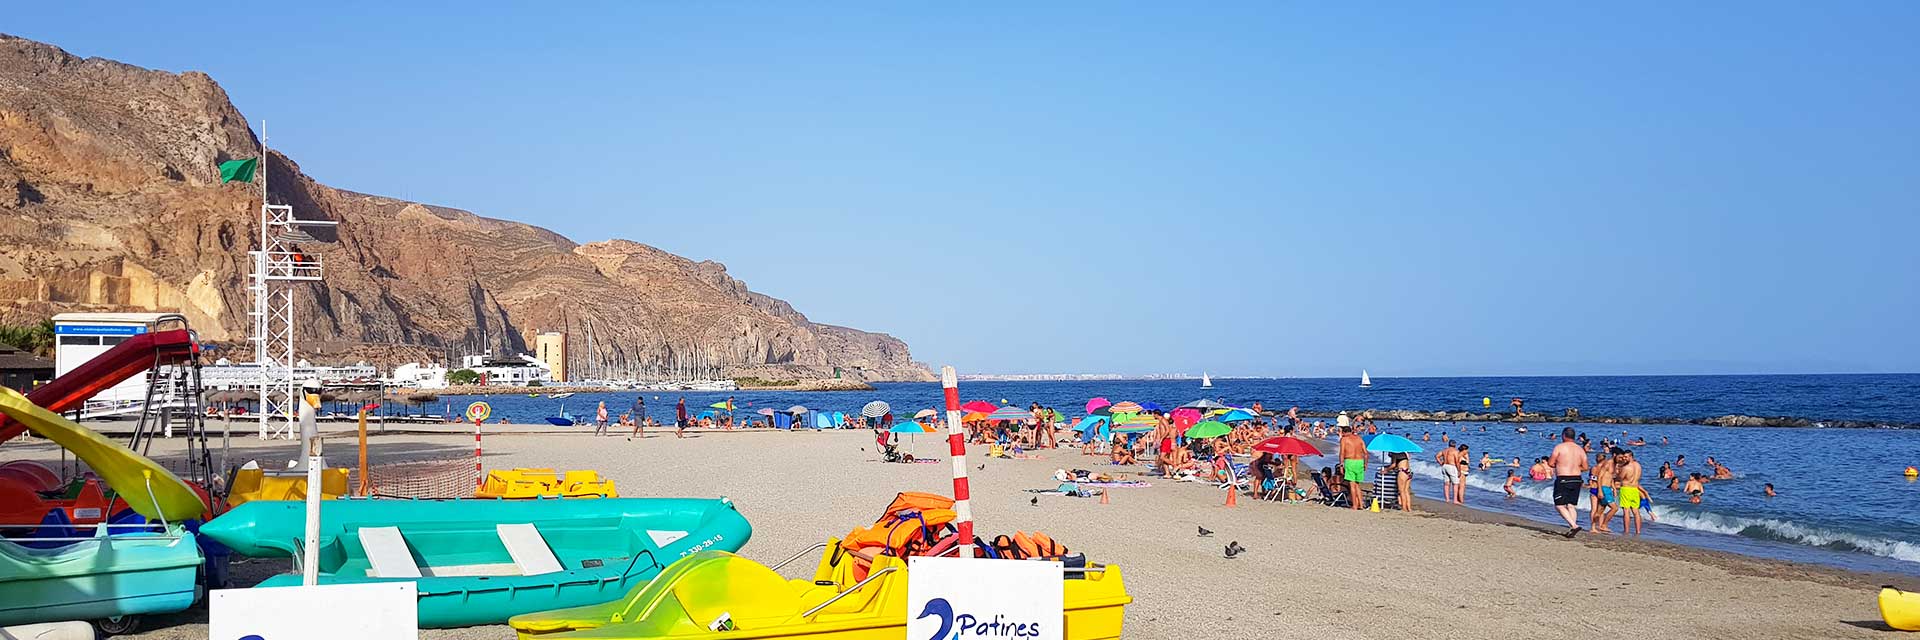 Playas de Aguadulce ▶ Costa de Almería